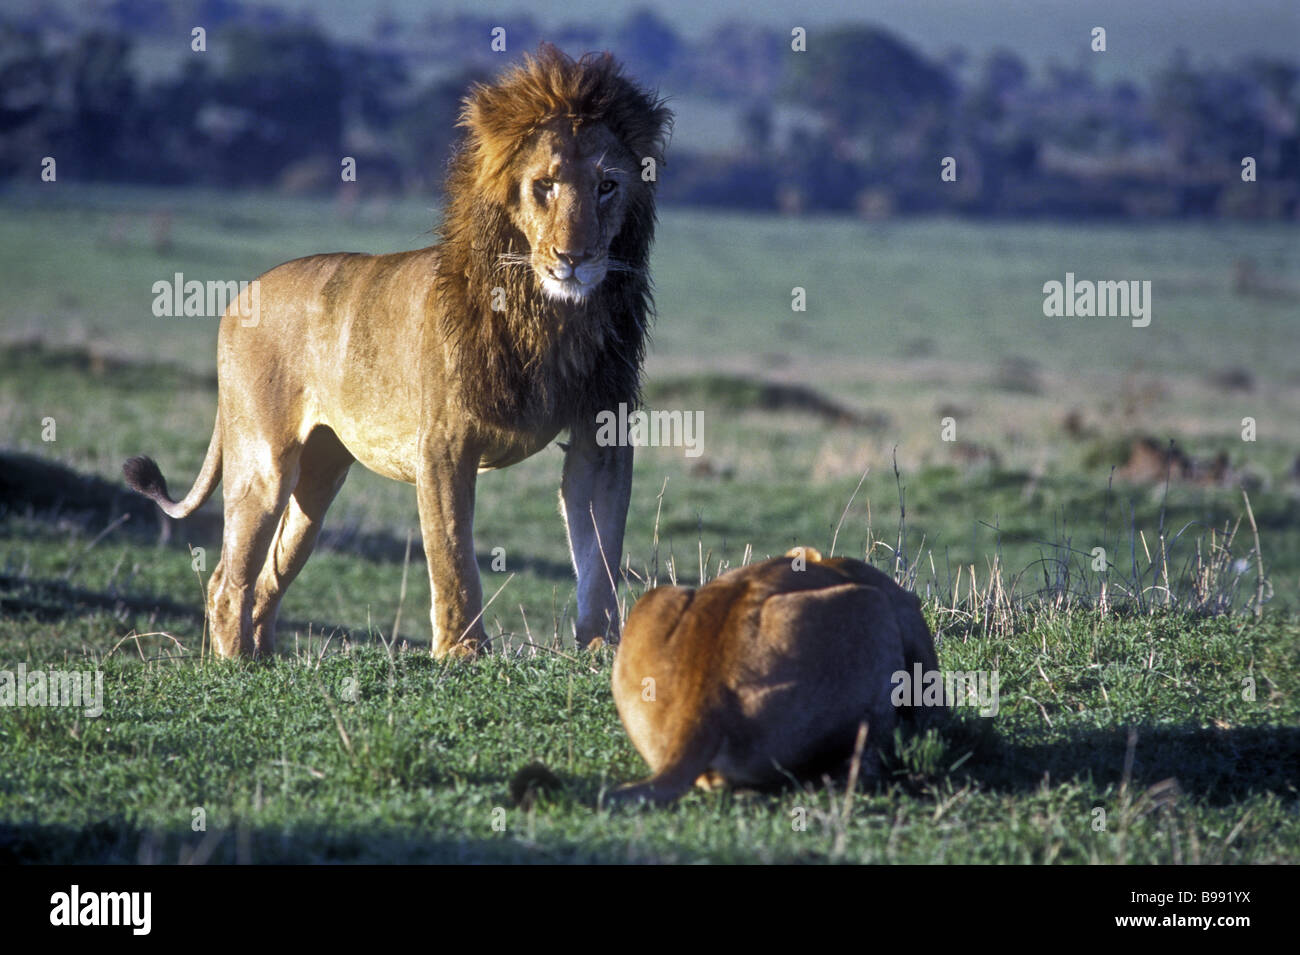 Lion mâle adulte est dominante par rapport à une femme soumise avant l'accouplement, Masai Mara National Reserve Kenya Afrique de l'Est Banque D'Images